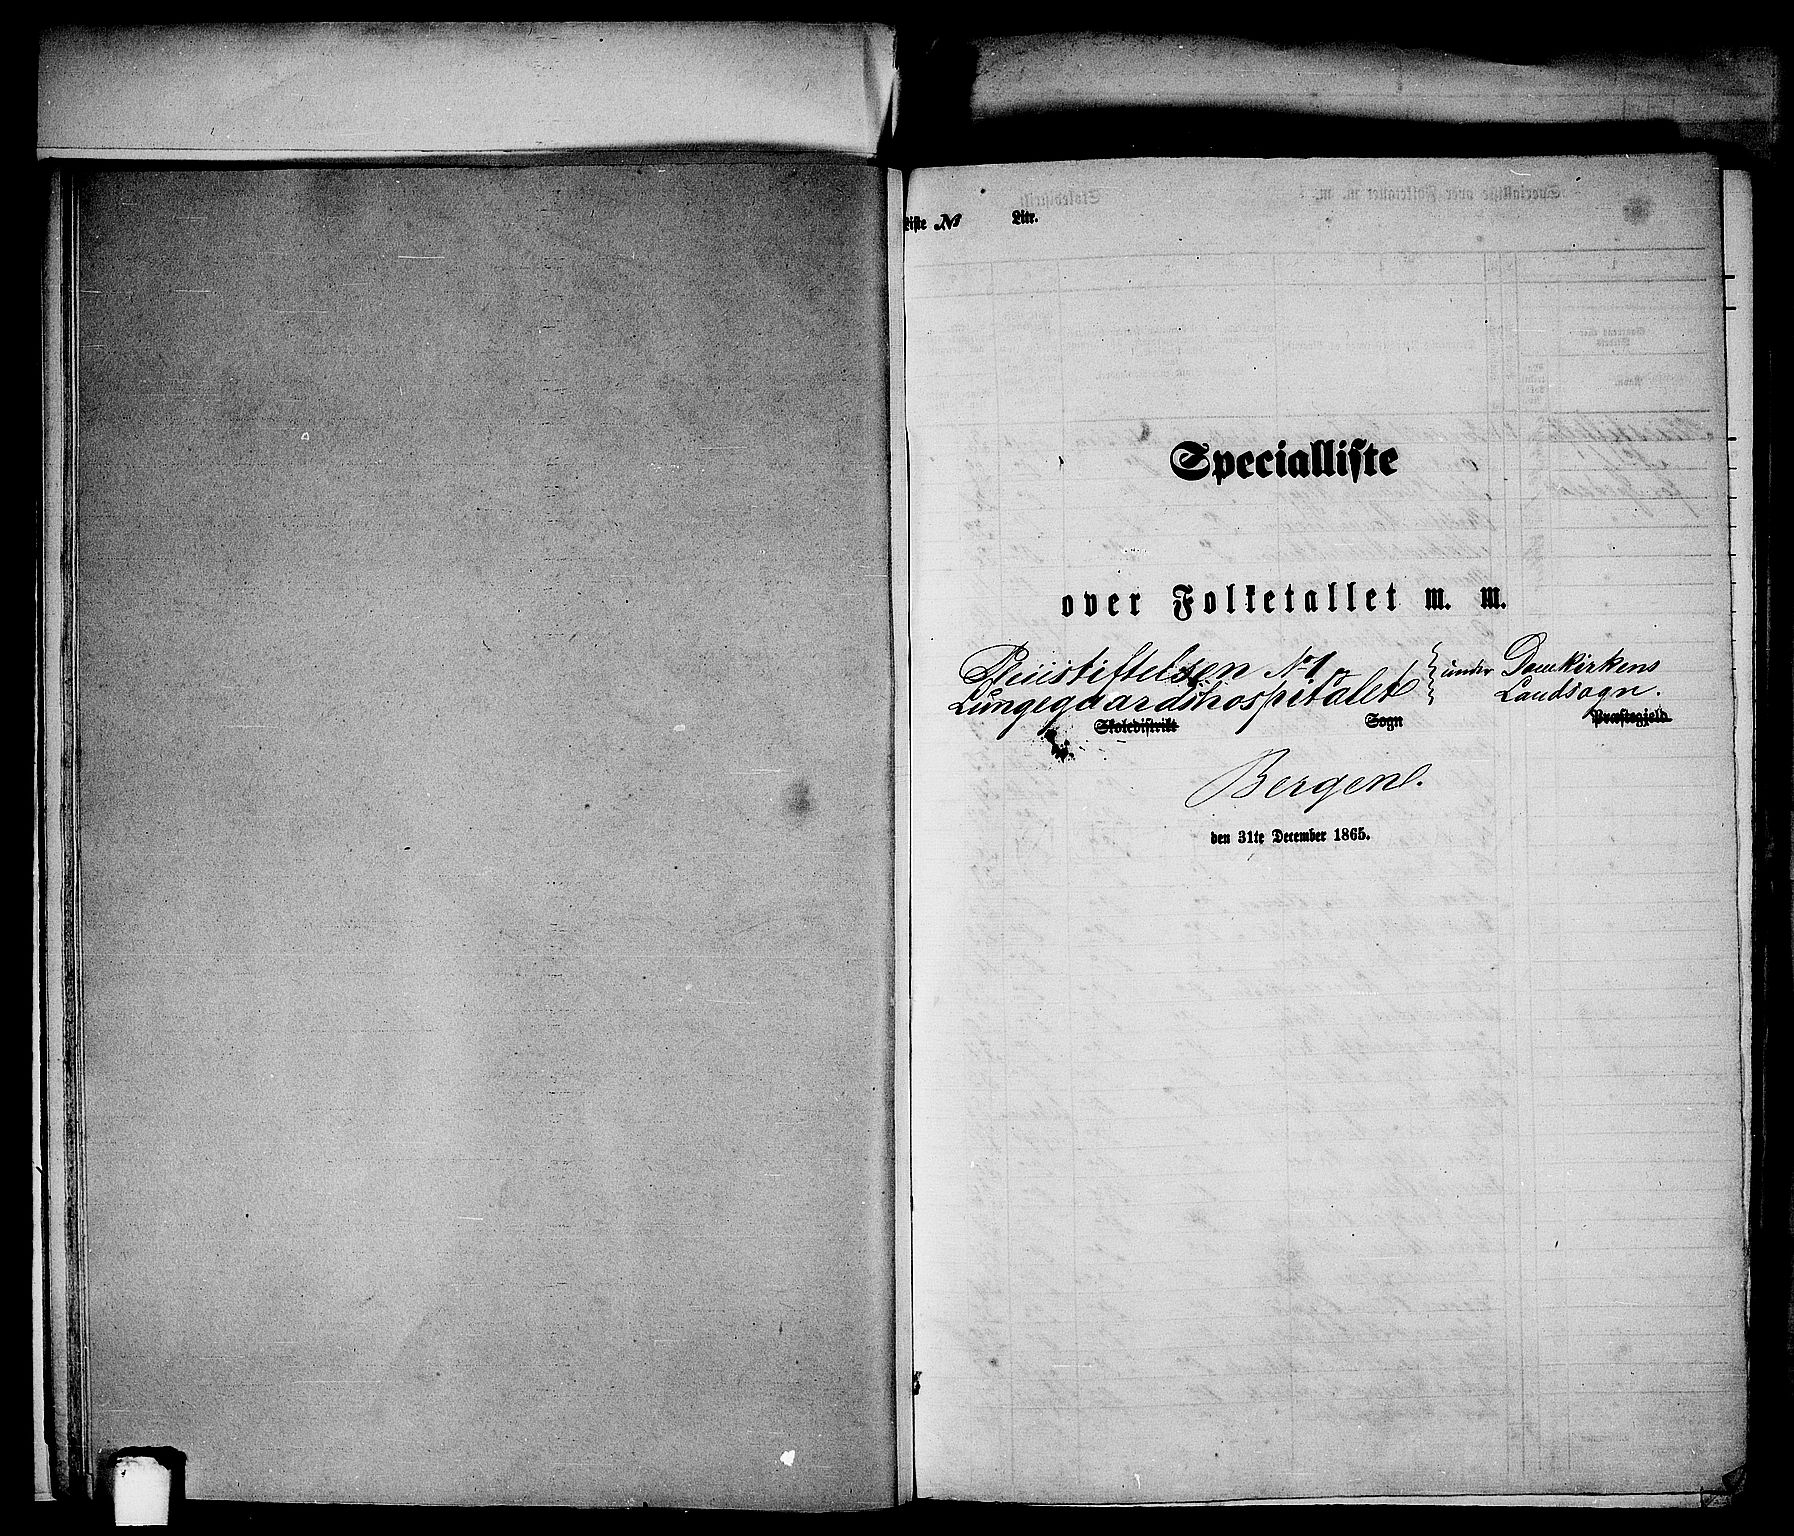 RA, Folketelling 1865 for 1281L Bergen Landdistrikt, Domkirkens landsokn og Korskirkens landsokn, 1865, s. 17